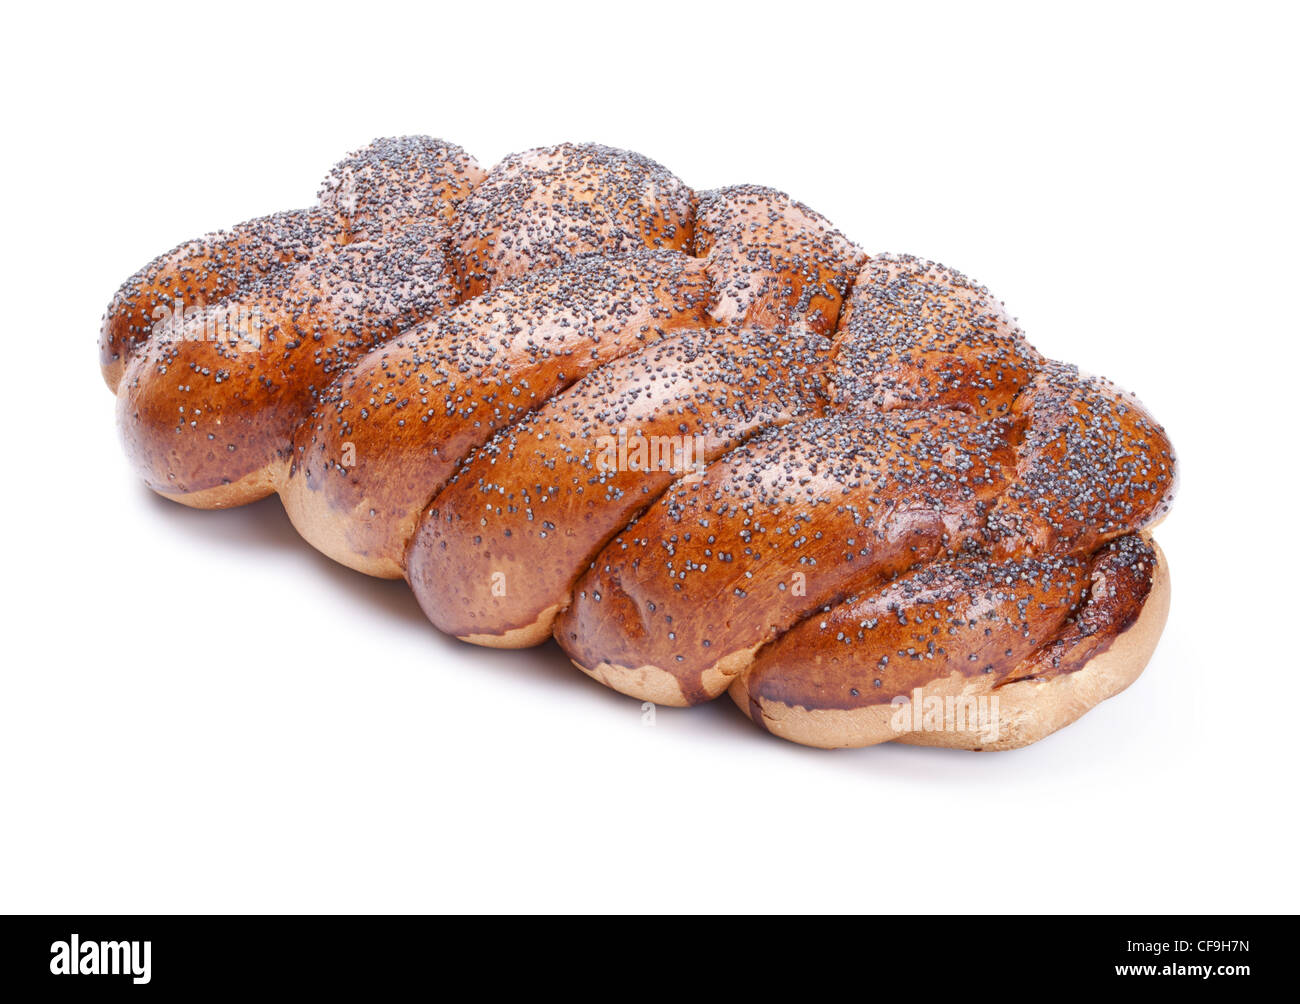 Filone di pane con semi di papavero isolato su uno sfondo bianco Foto Stock